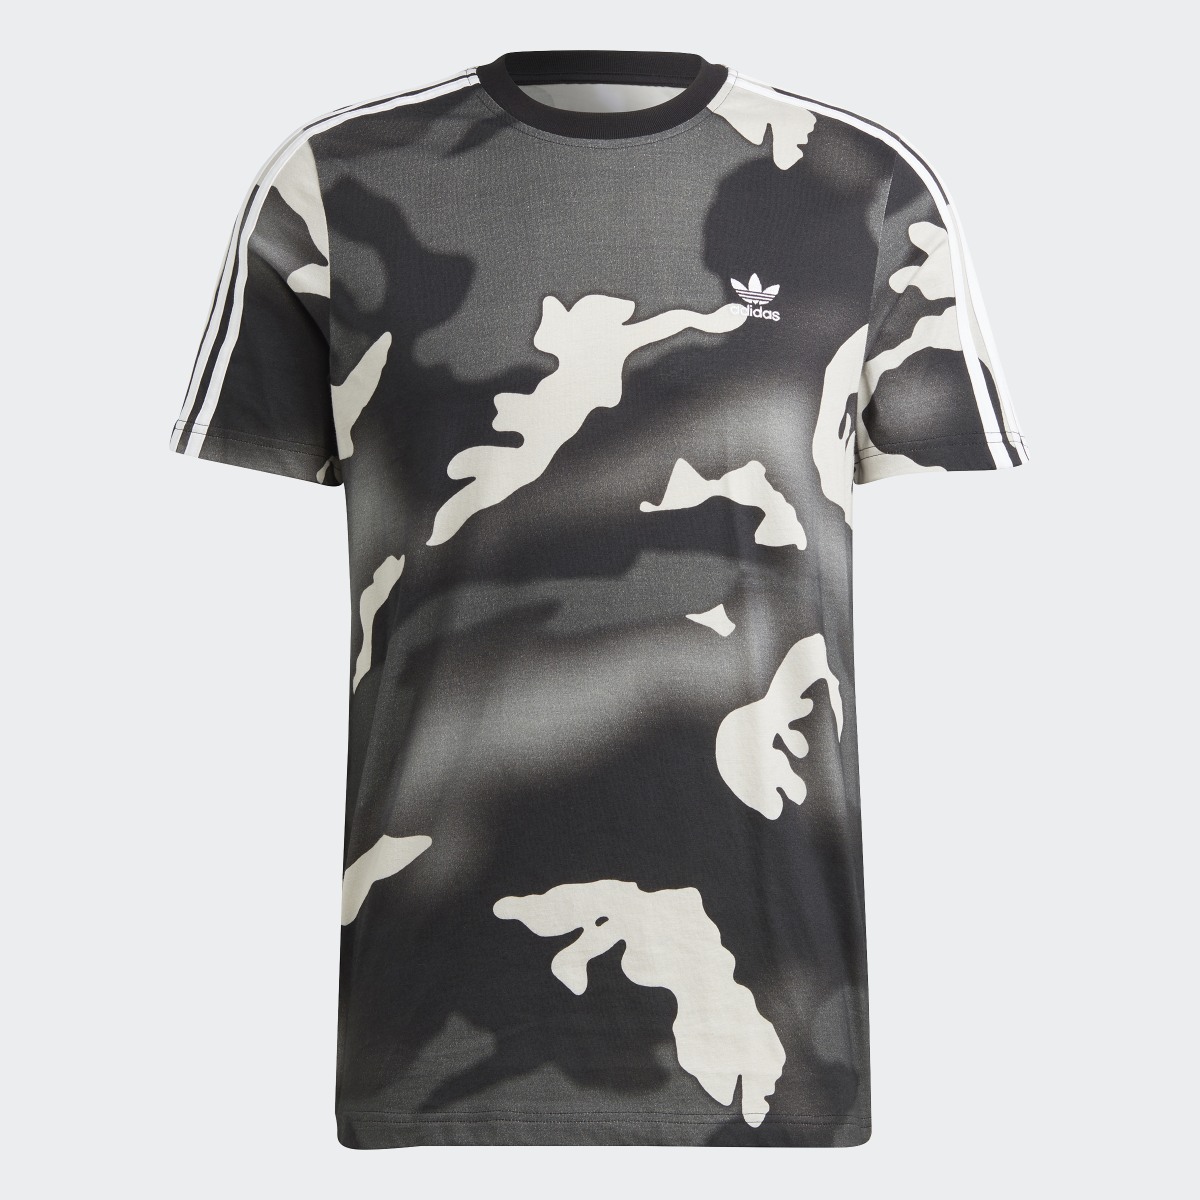 Adidas T-shirt graphique à imprimé camouflage intégral. 5